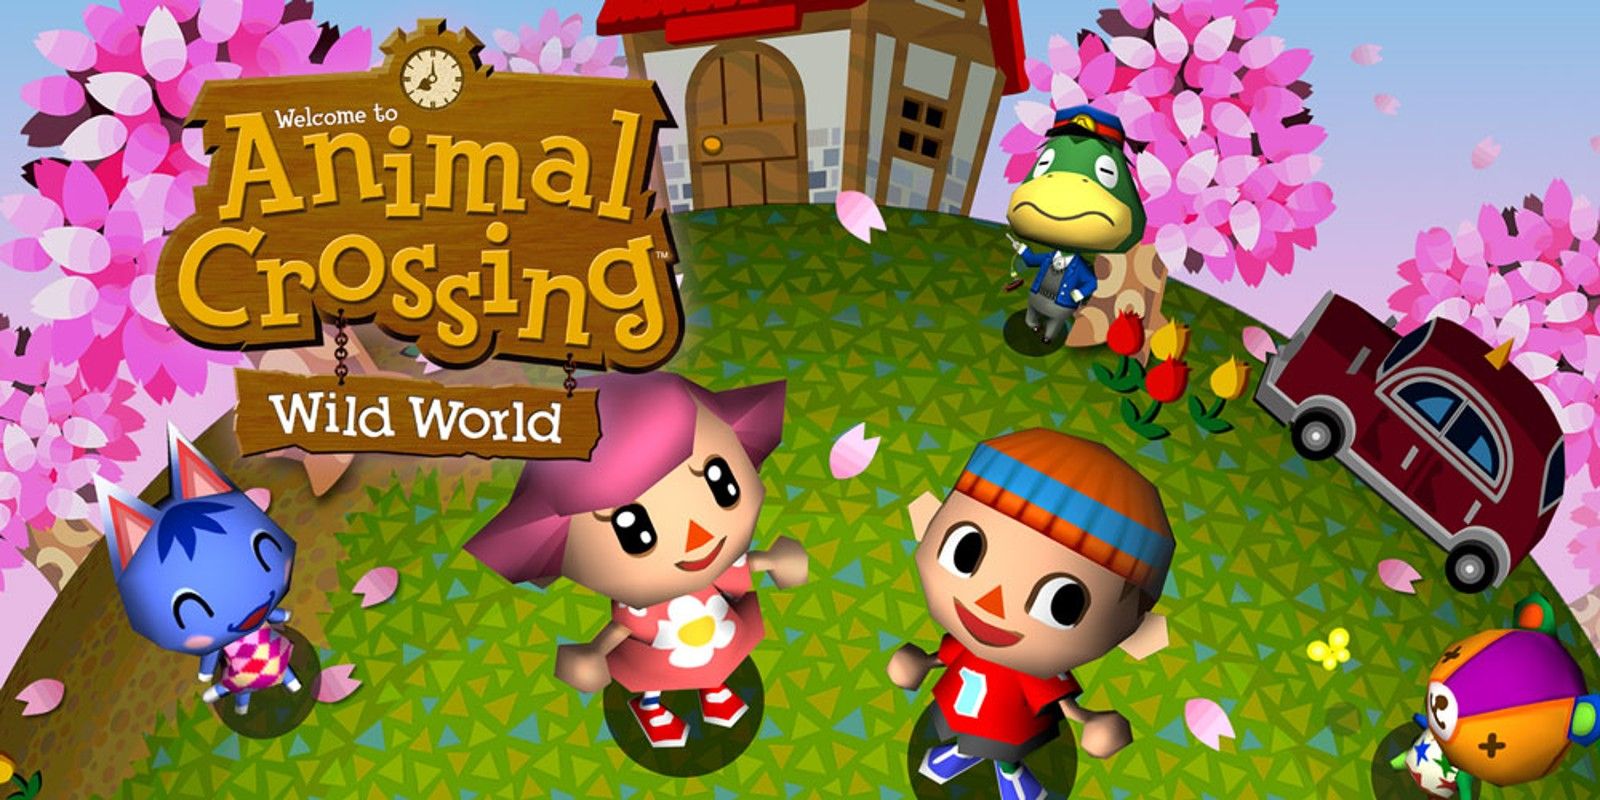 Arte de Animal Crossing Wild World mostrando personagens em uma cena de primavera.